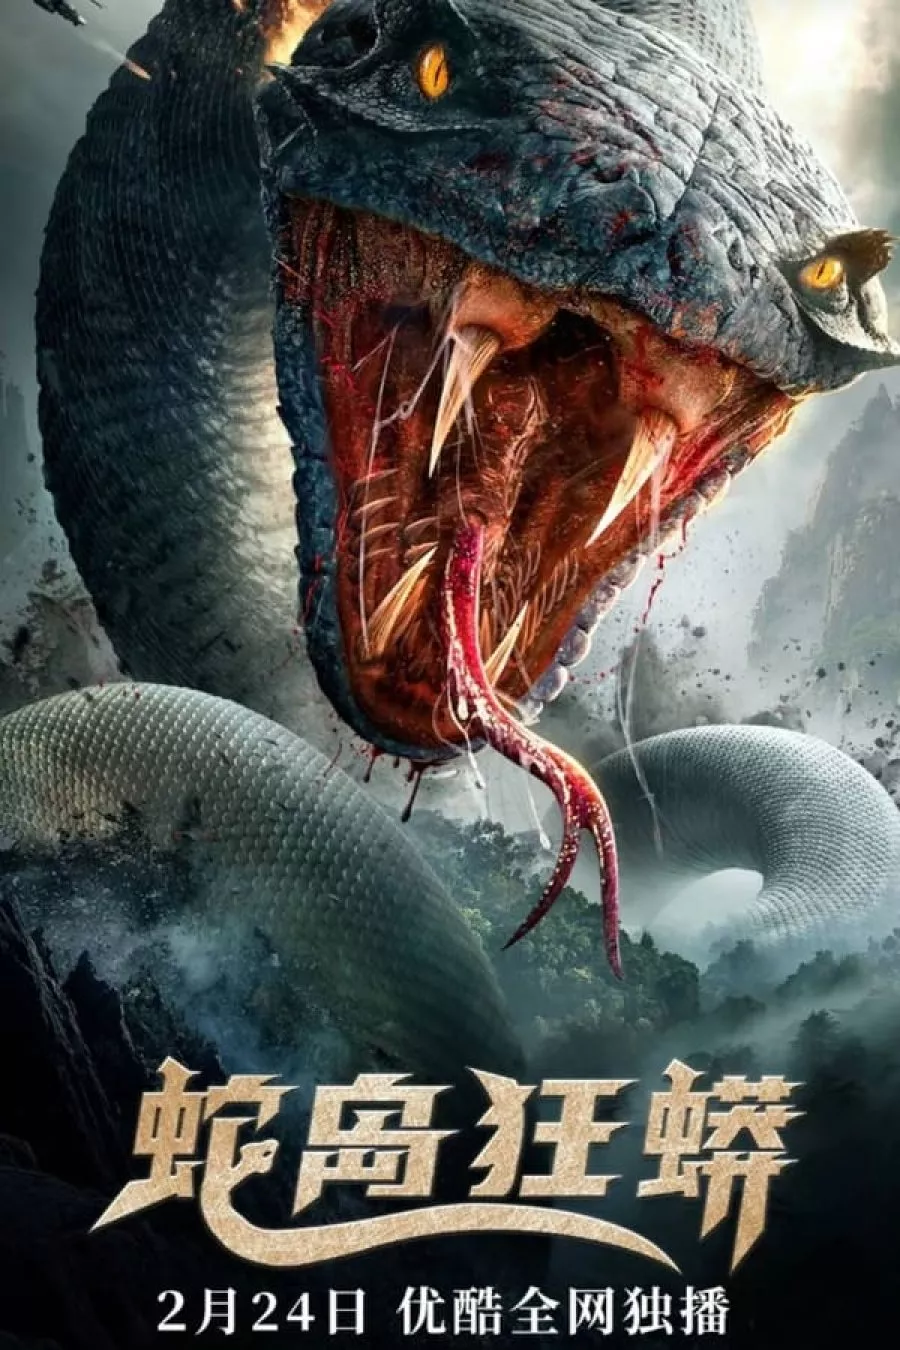 ดูหนัง Snake Island Python (2022) มหาภัยเกาะงูนรก ซับไทย เต็มเรื่อง | 9NUNGHD.COM